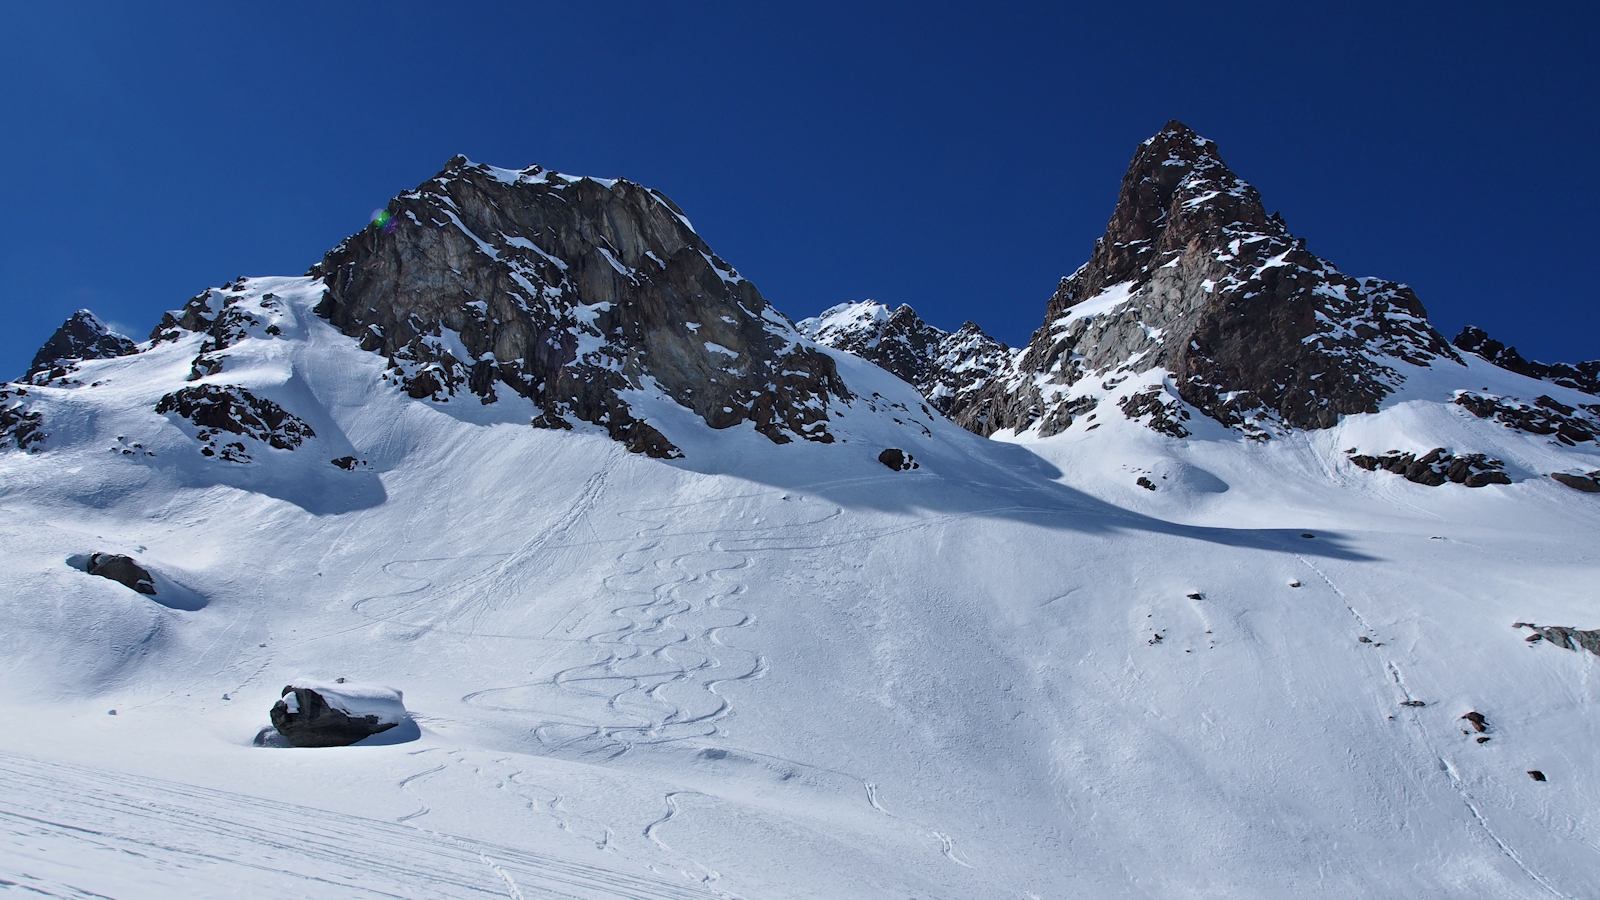 Sortie de la Combe suspendue : Arrivée sur le glacier du Ruitor vers 2700 m.